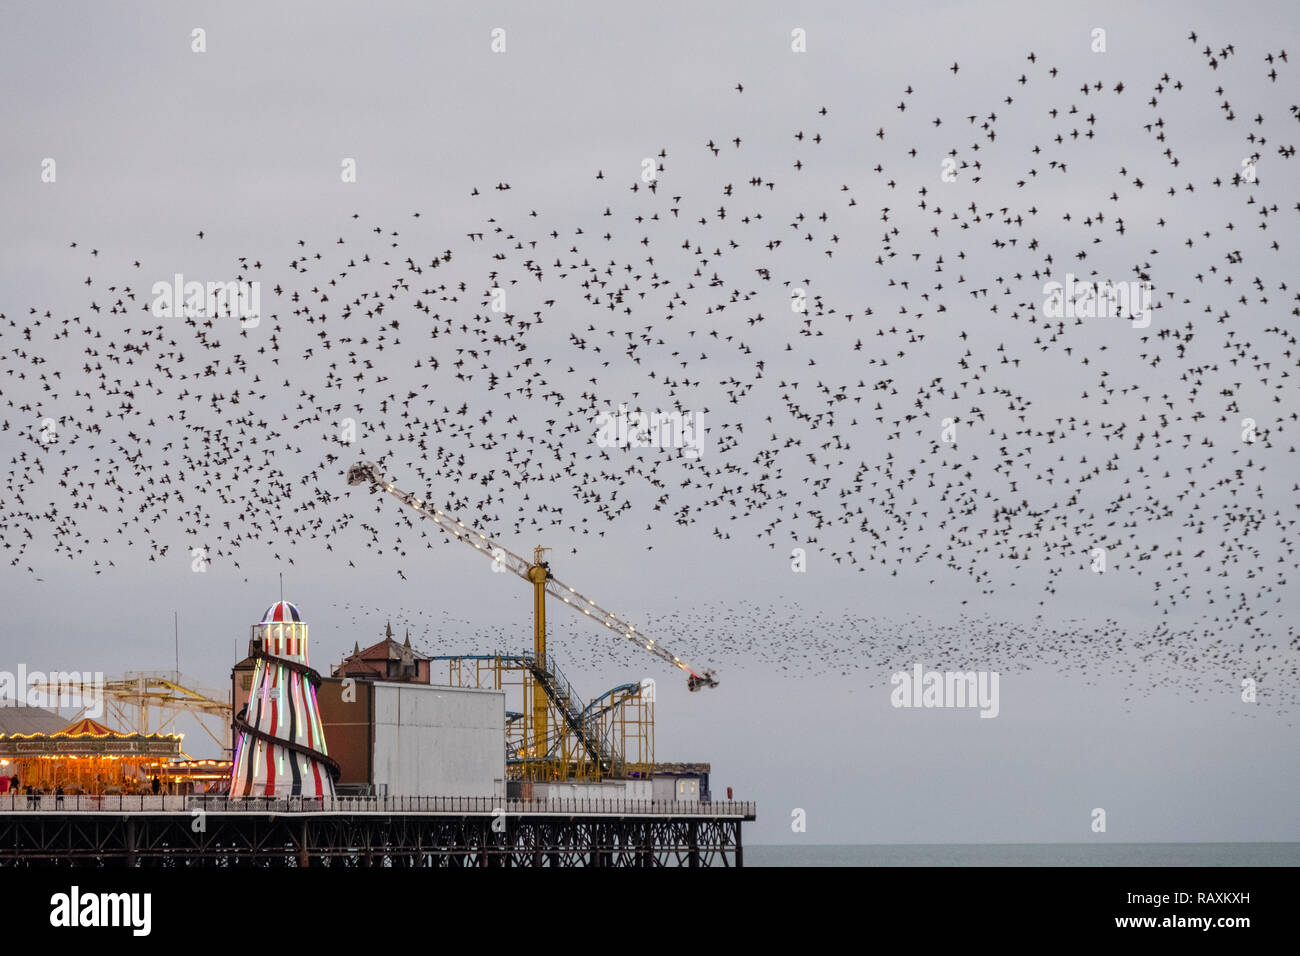 Murmuration d'étourneaux sur Palace Pier, Brighton, Sussex, UK. Photographié par une froide soirée de décembre. Les oiseaux se rassemblent à la tombée de la nuit avant la nidification. Banque D'Images